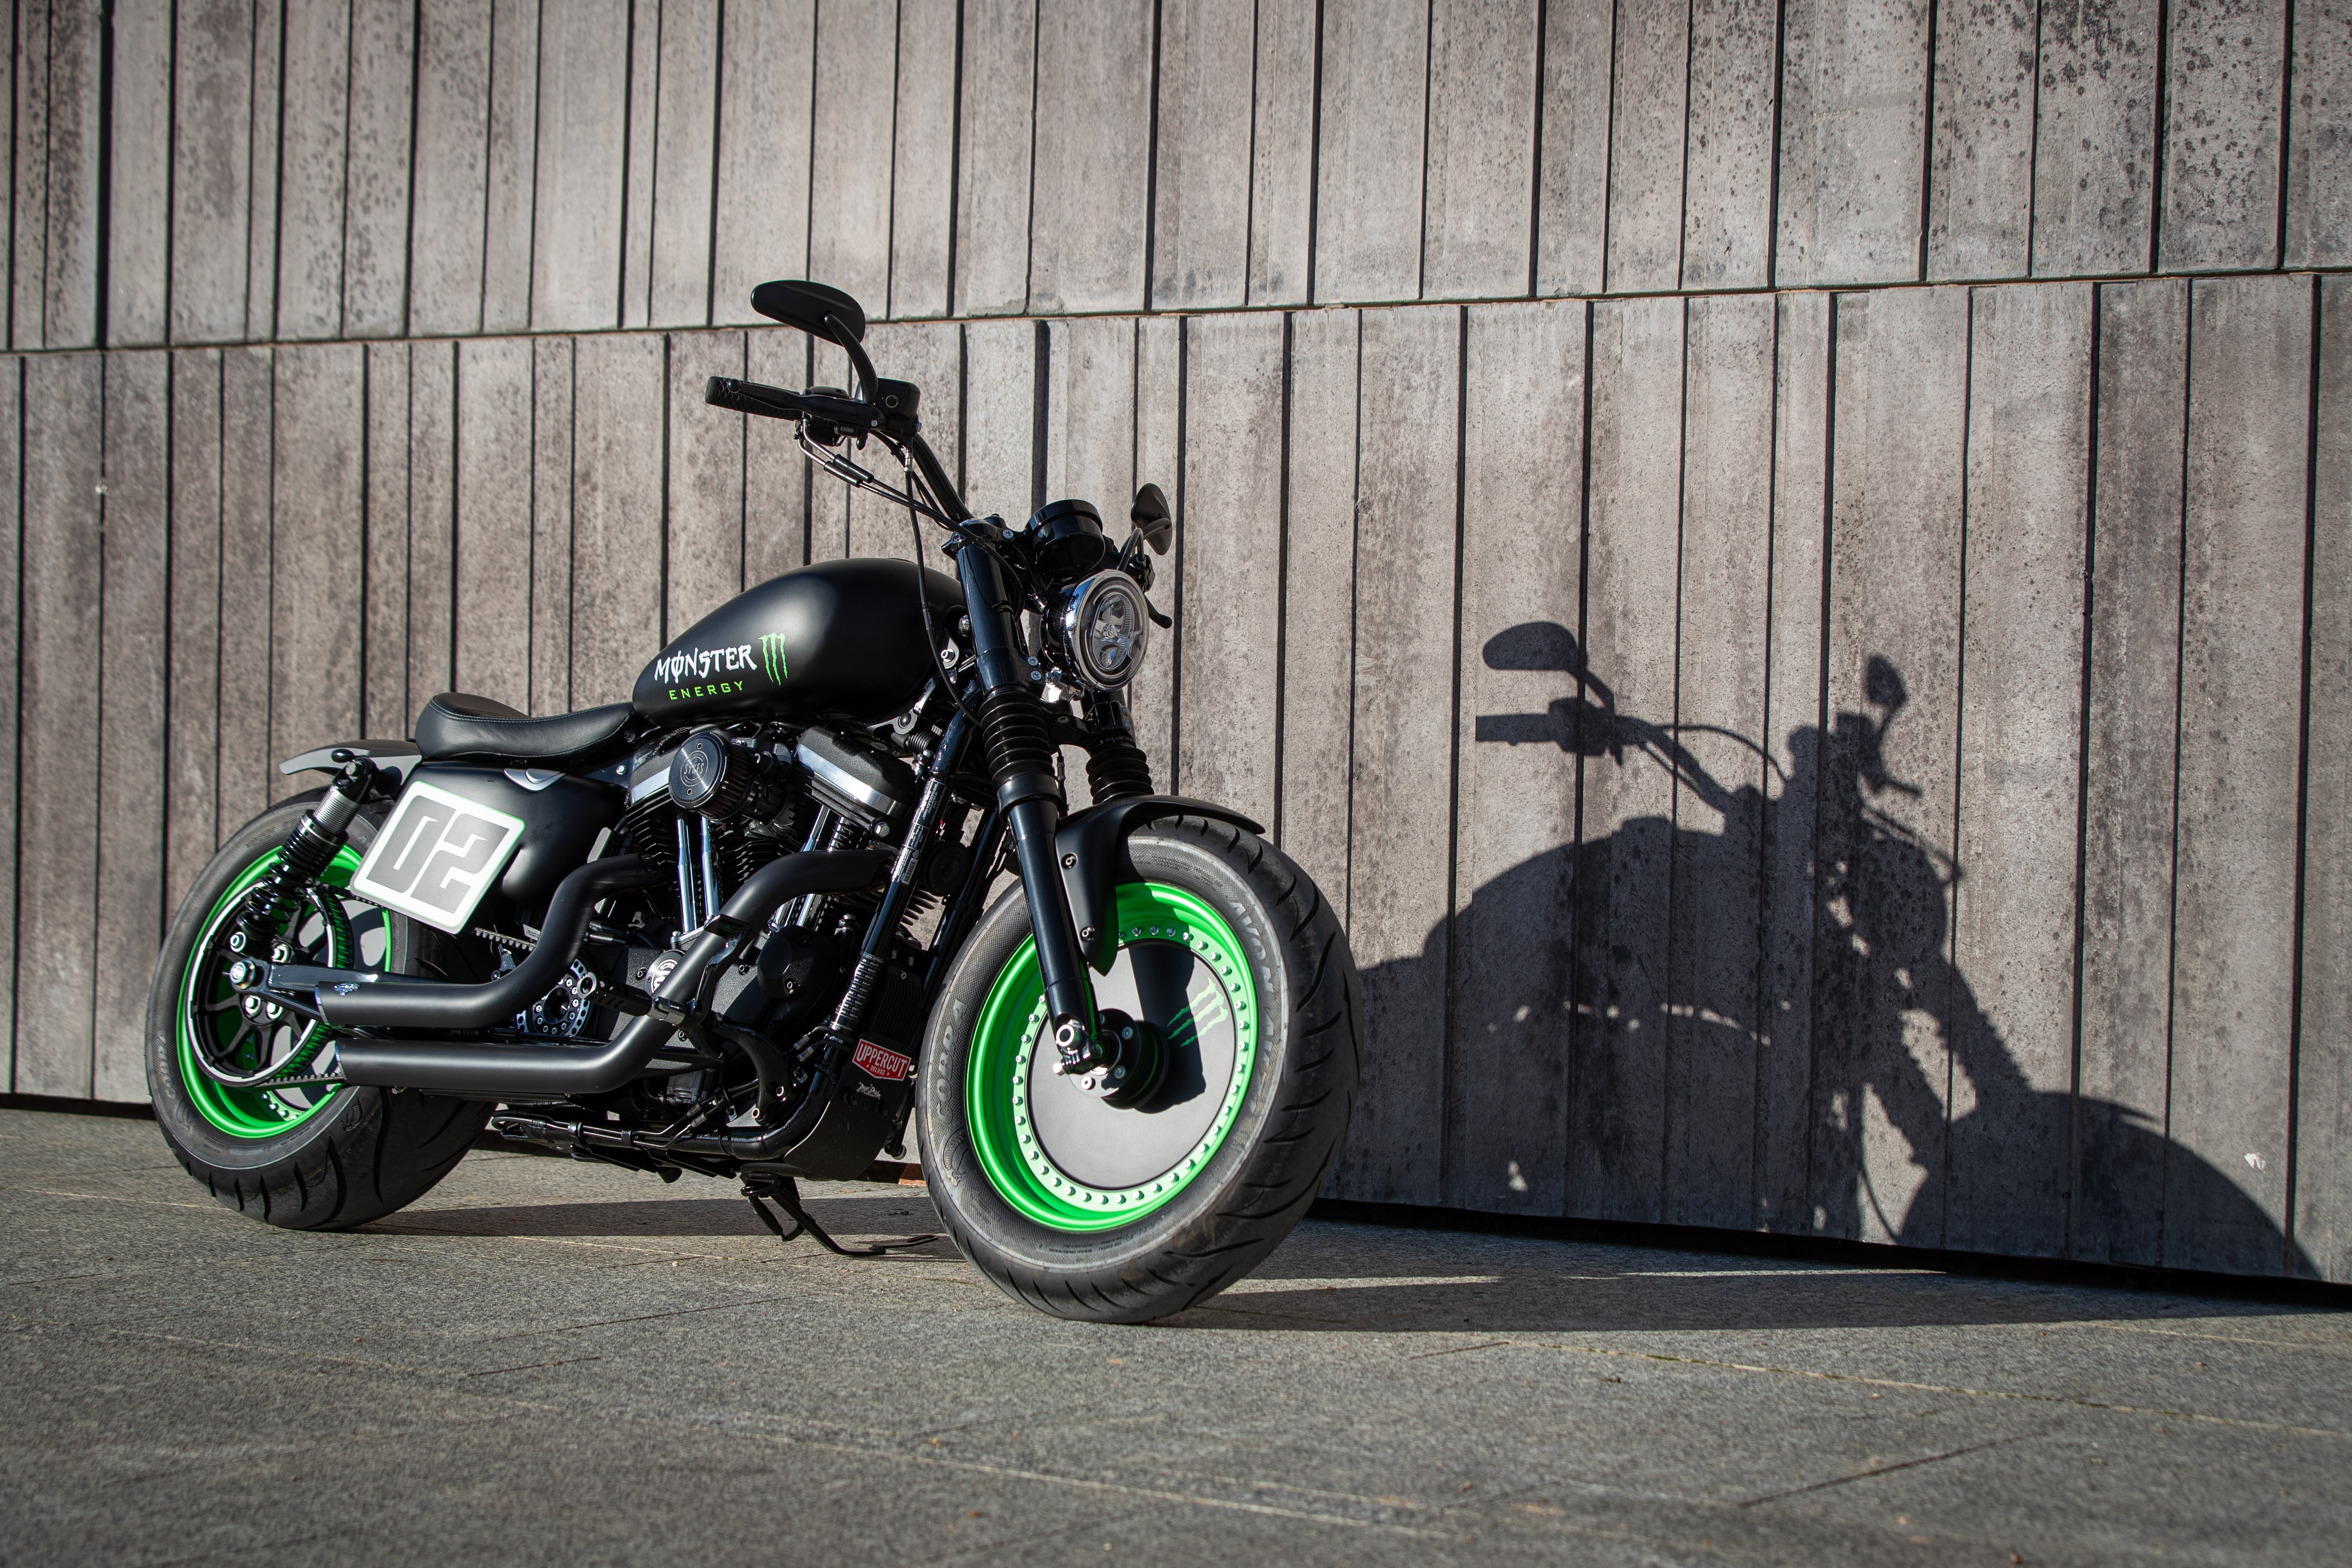 Ngam dan xe Harley-Davidson Sportster lot xac voi ban do Sykes hinh anh 7 2020_Harley_Davidson_Sportster_Custom_5298.jpg